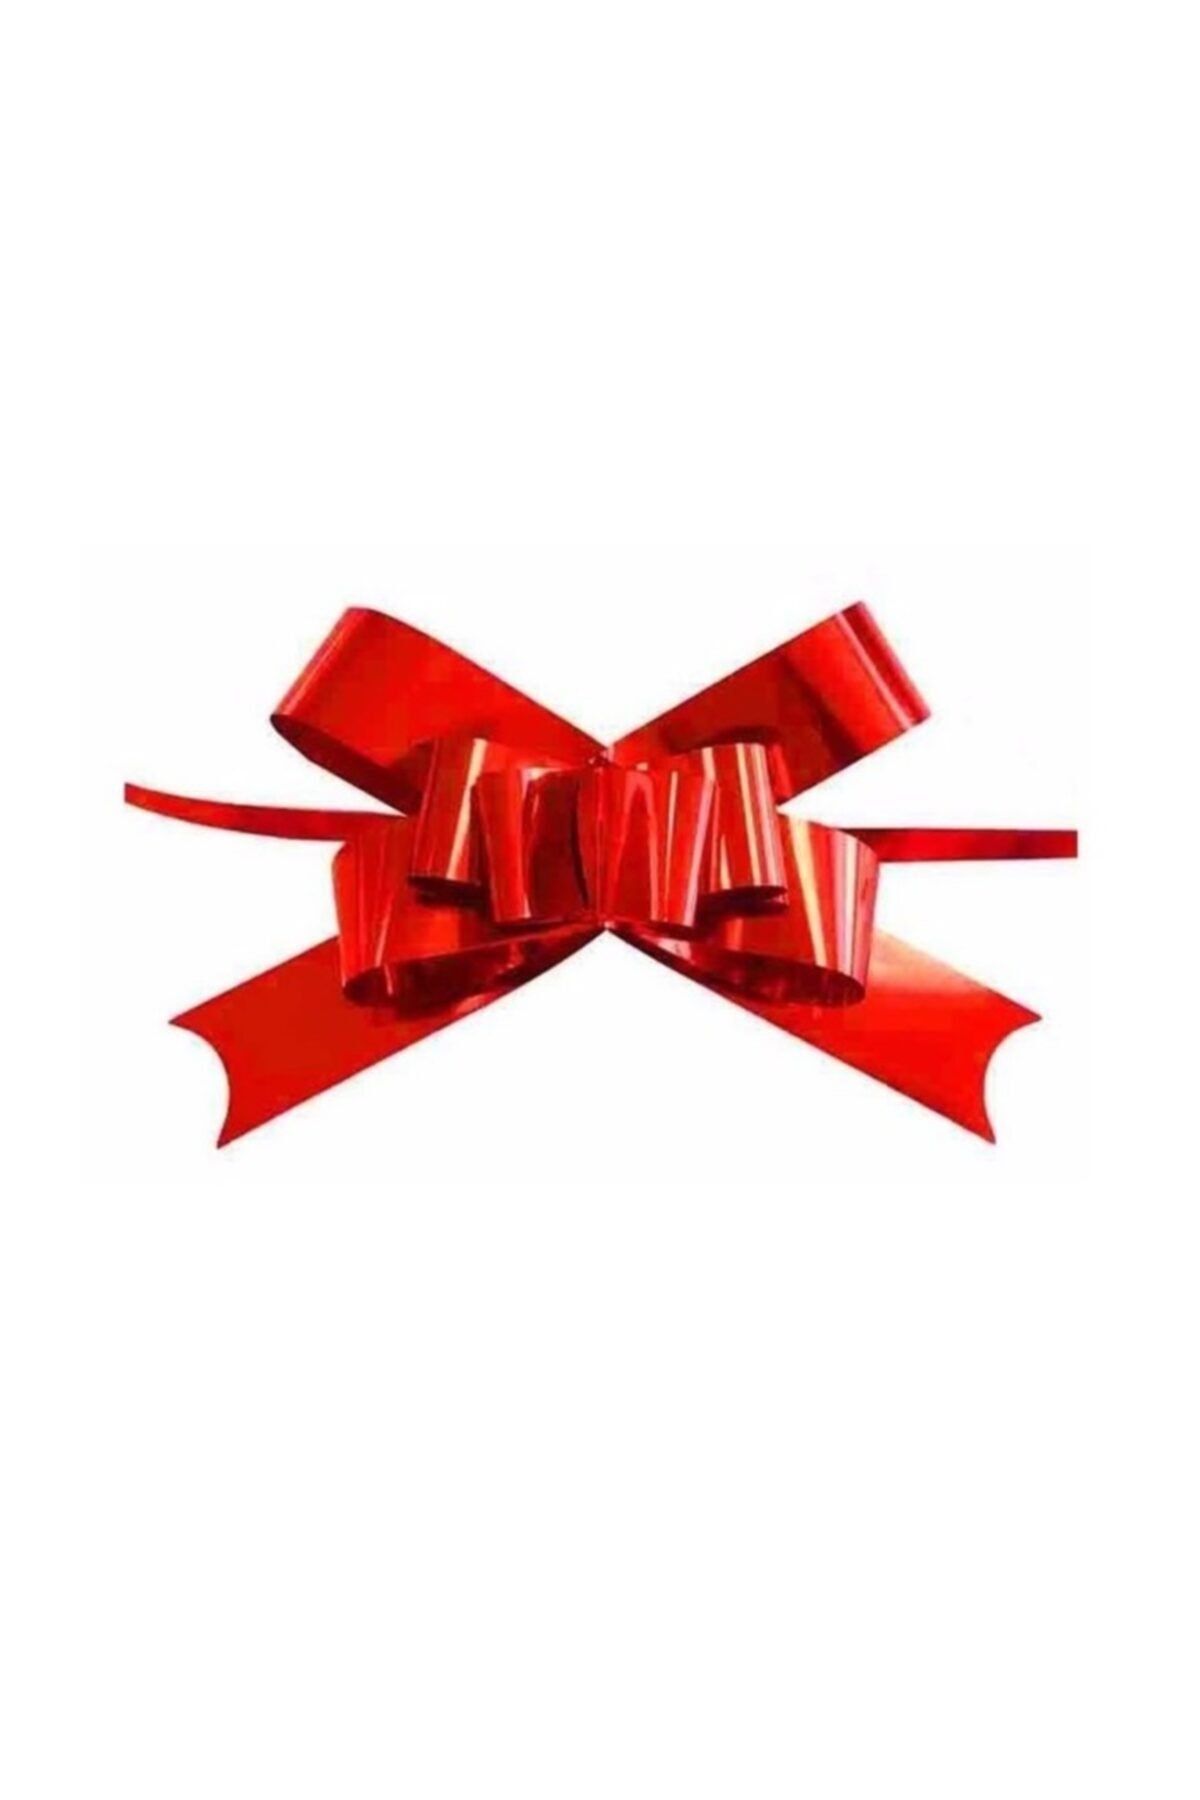 Happyland 5 Adet Sevgililer Günü Hediye Paketi-kutusu Süsü Pratik Çekme Rafya Fiyonk Kırmızı 2cm (13cm *10cm)